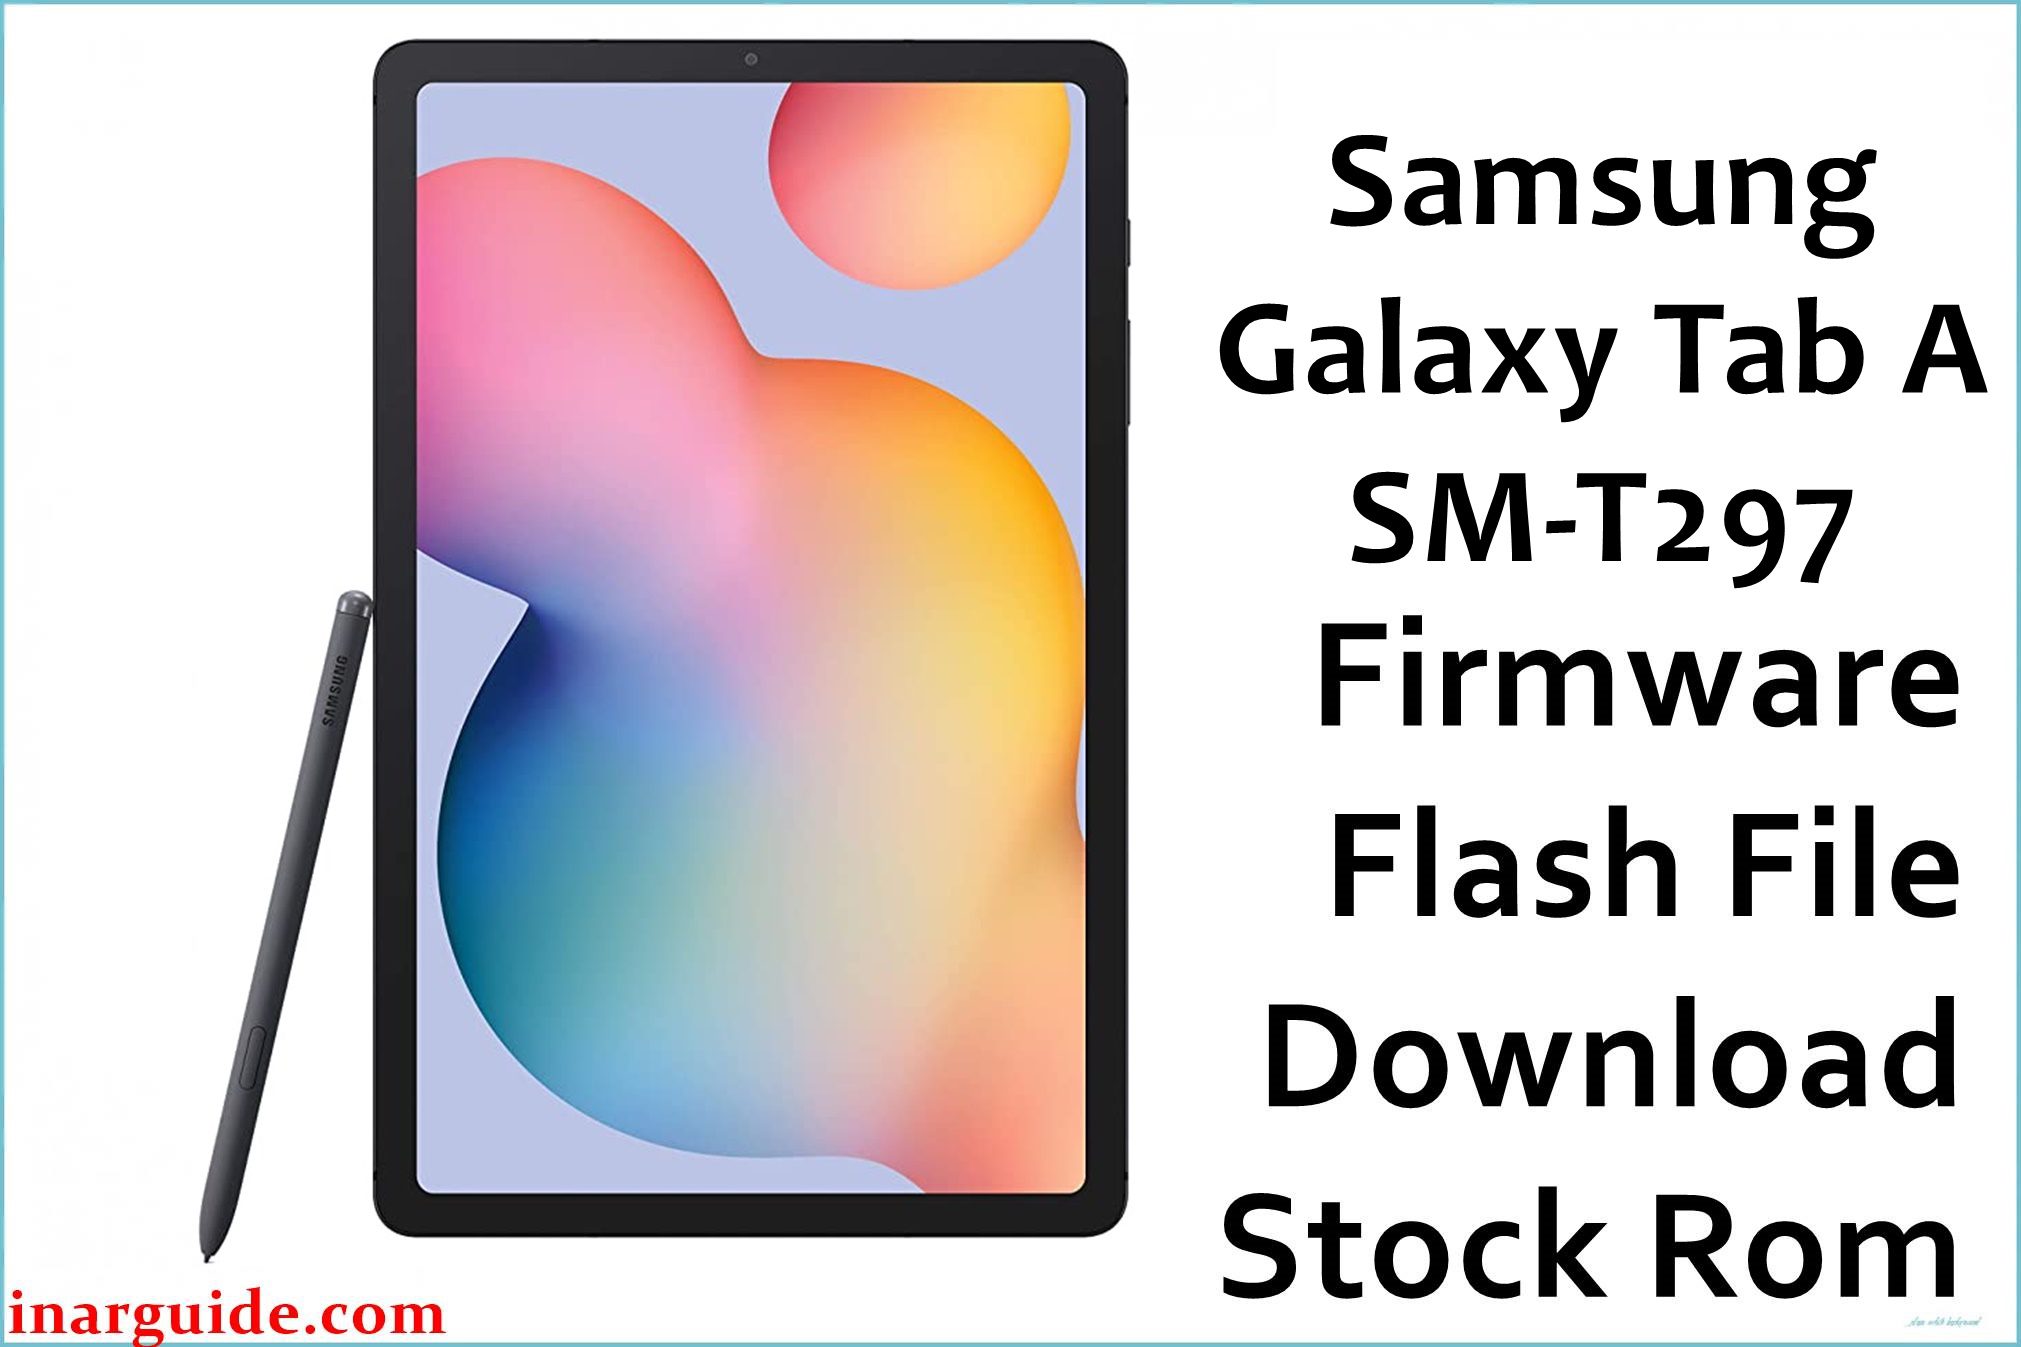 Samsung Galaxy Tab A SM T297